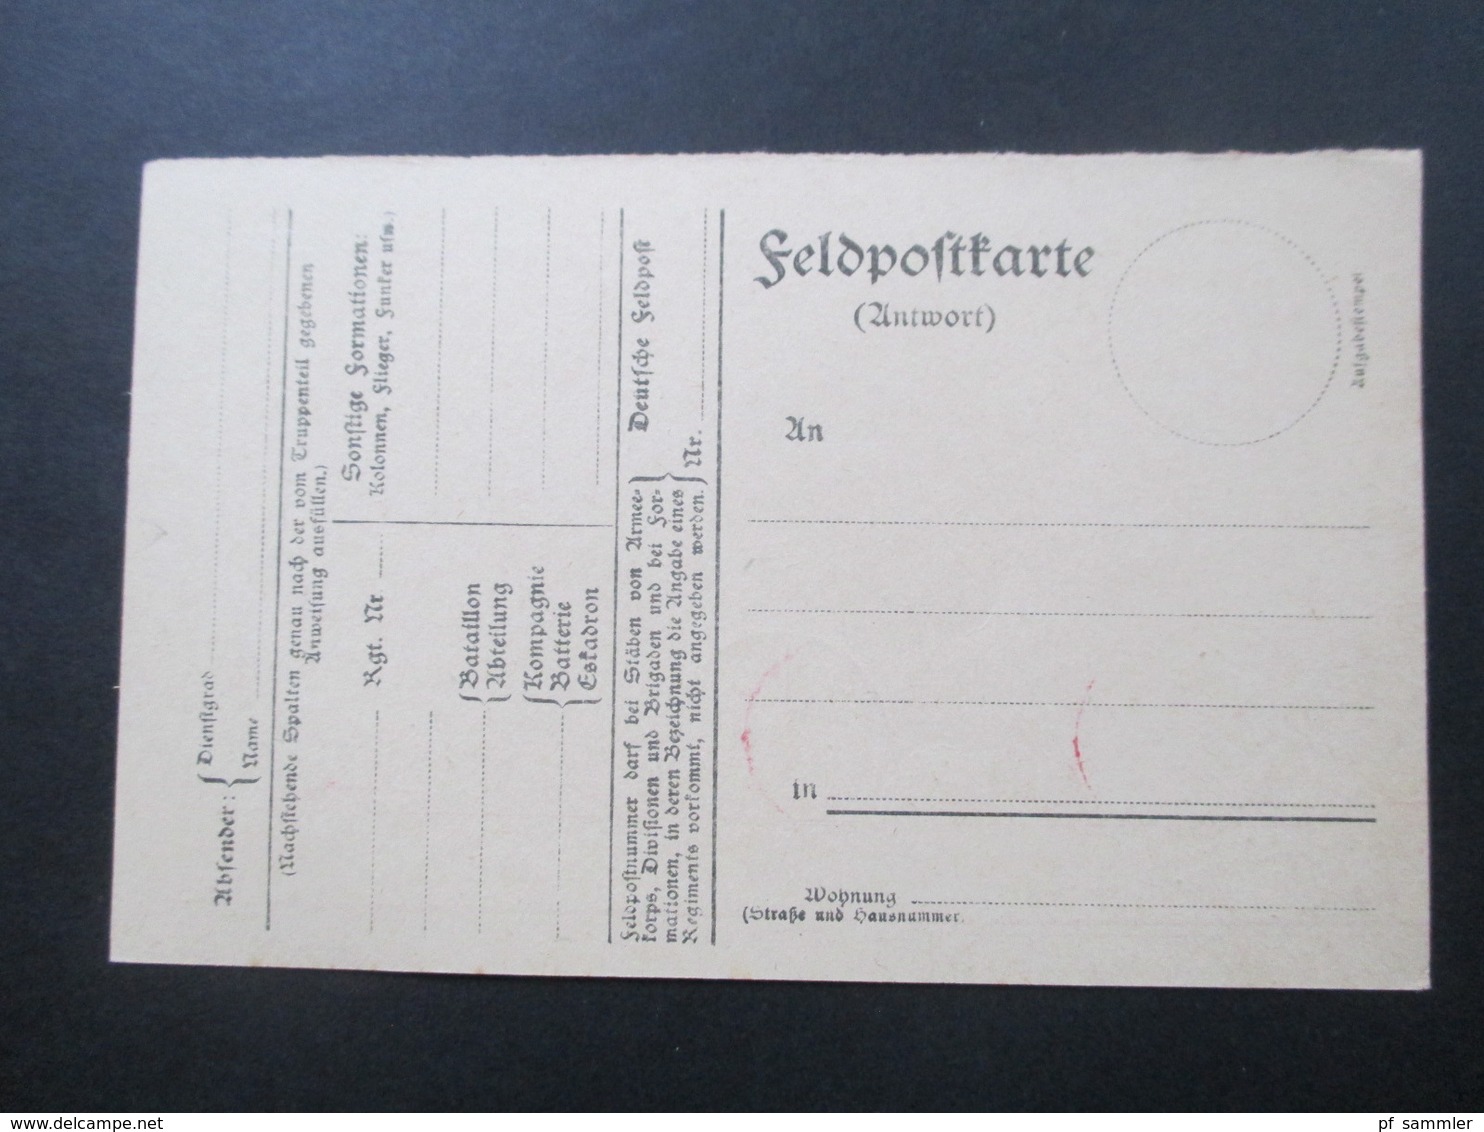 DR 1922 / 23 Infla rote Freistempel Berlin Charlottenburg 9 Karten verschiedene Wertstufen 8 Blankokarten 1x gelaufen!